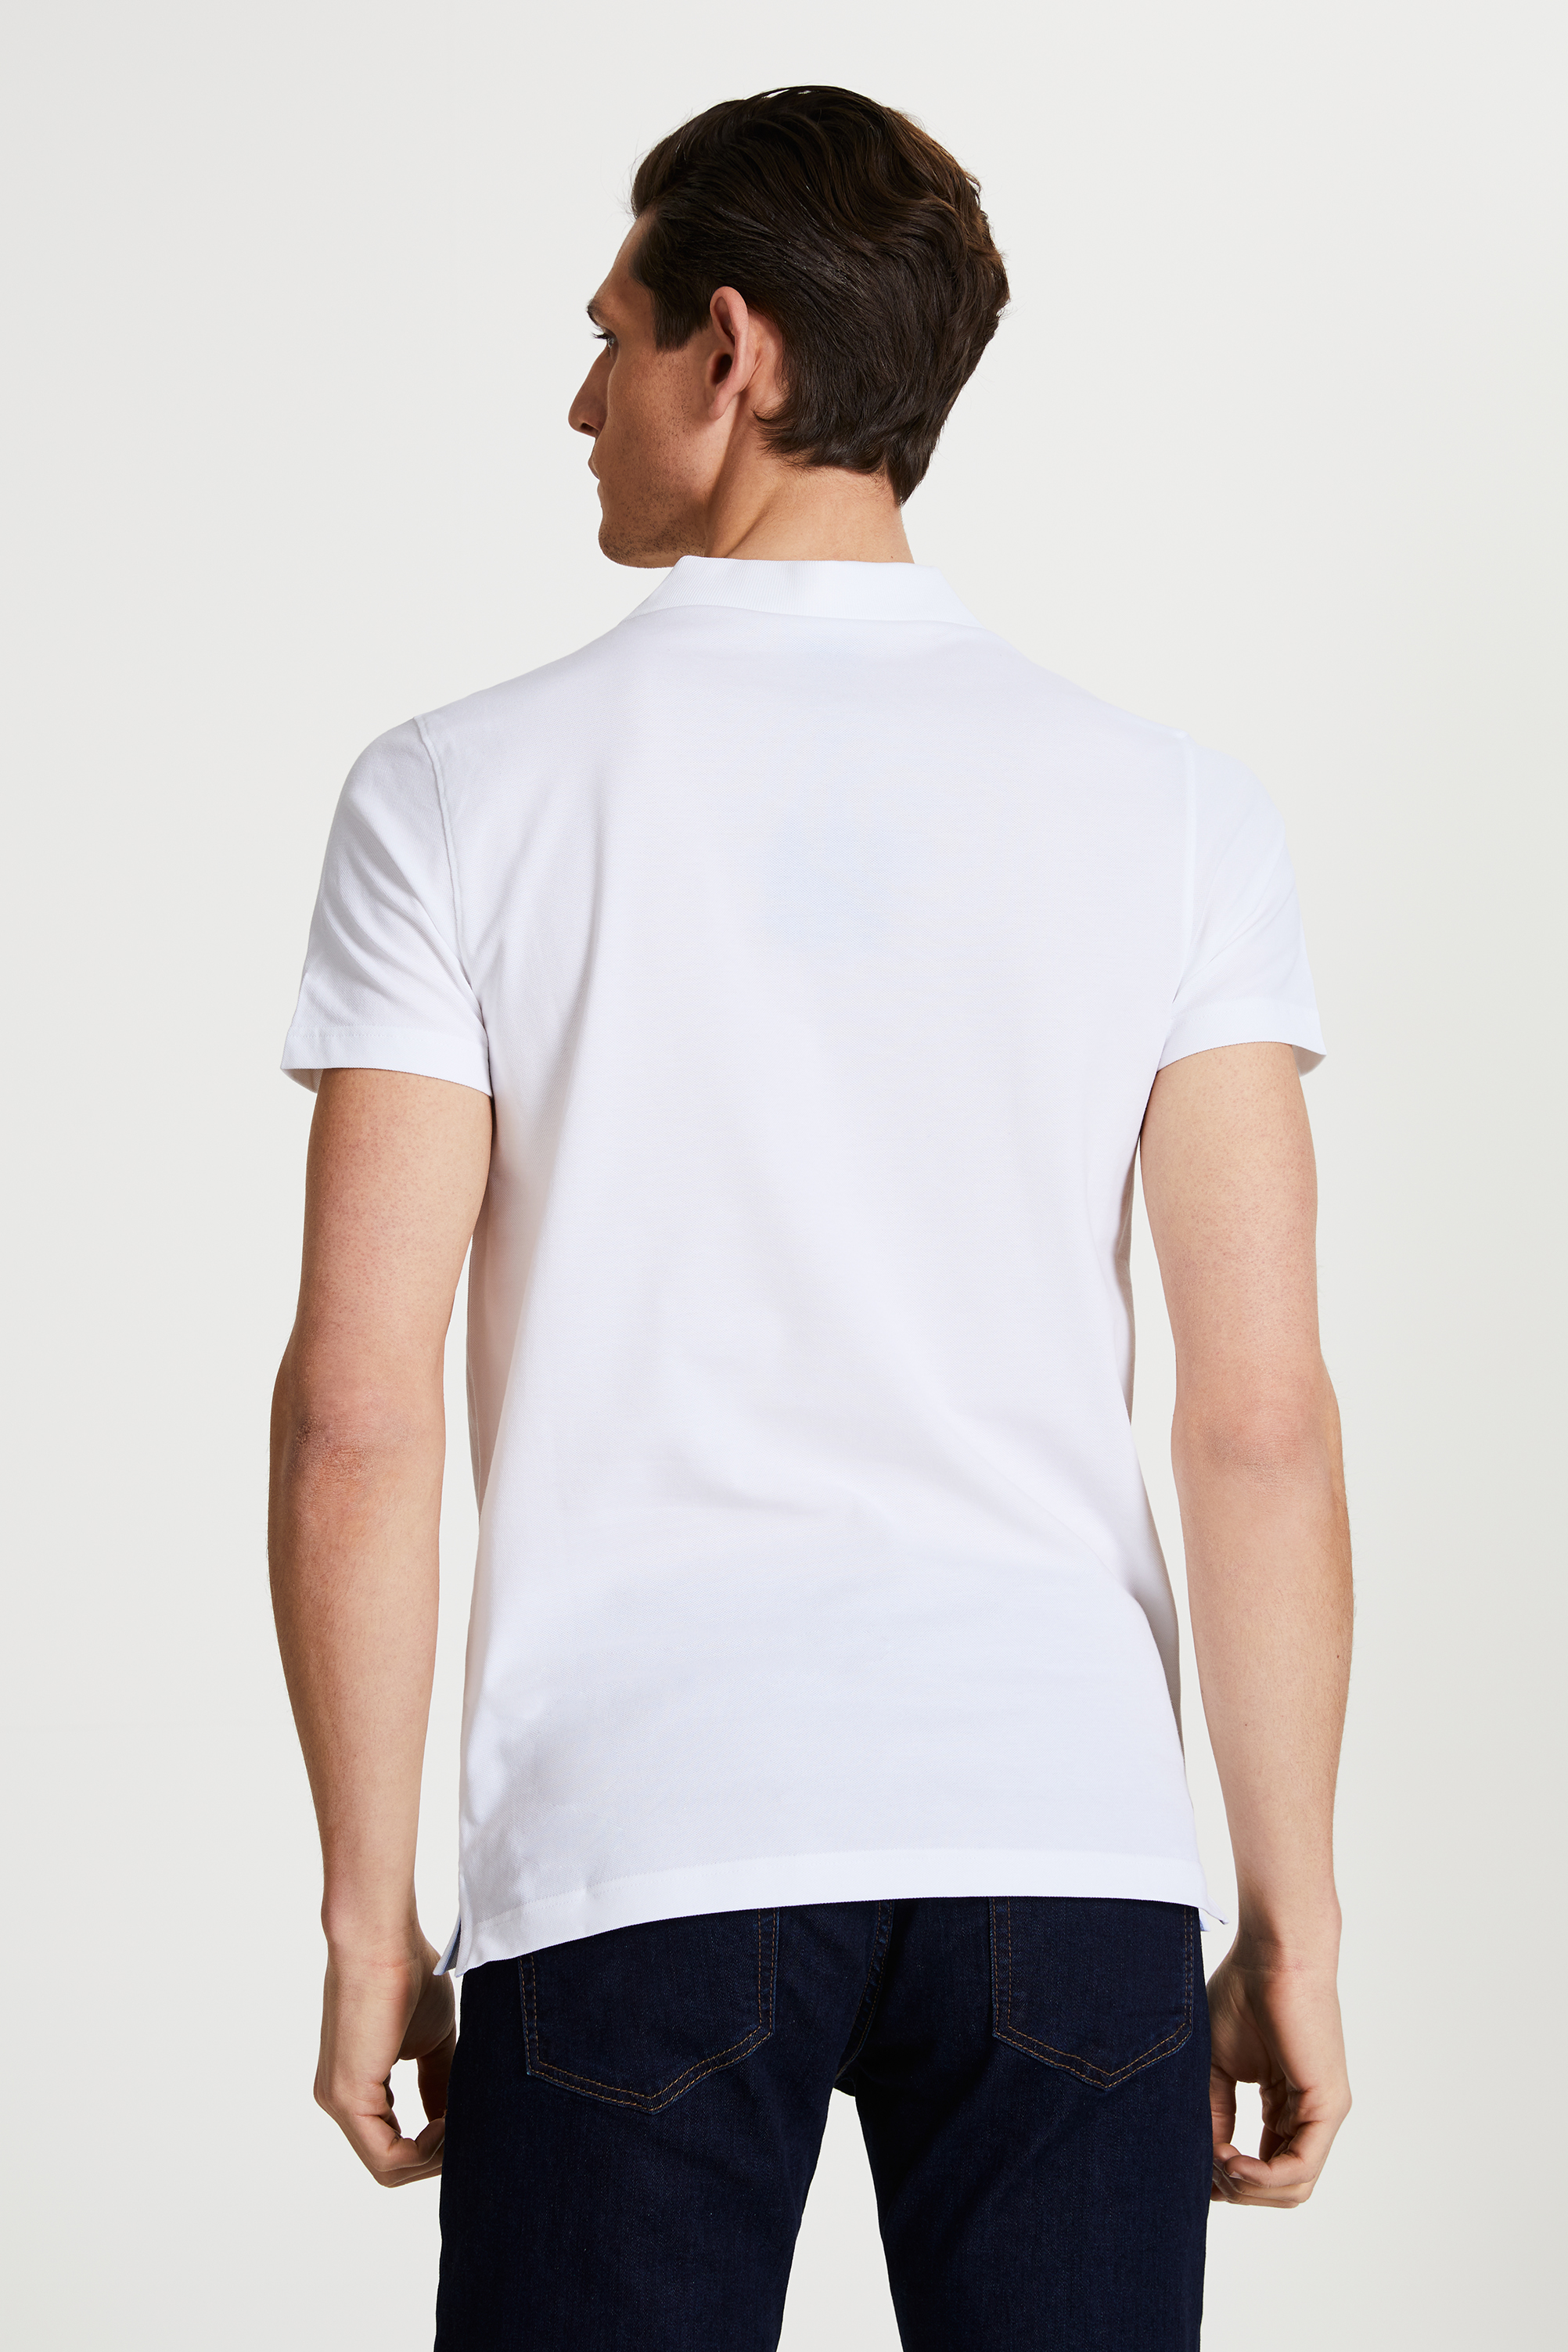 Damat Tween Tween Beyaz Baskılı T-shirt. 4